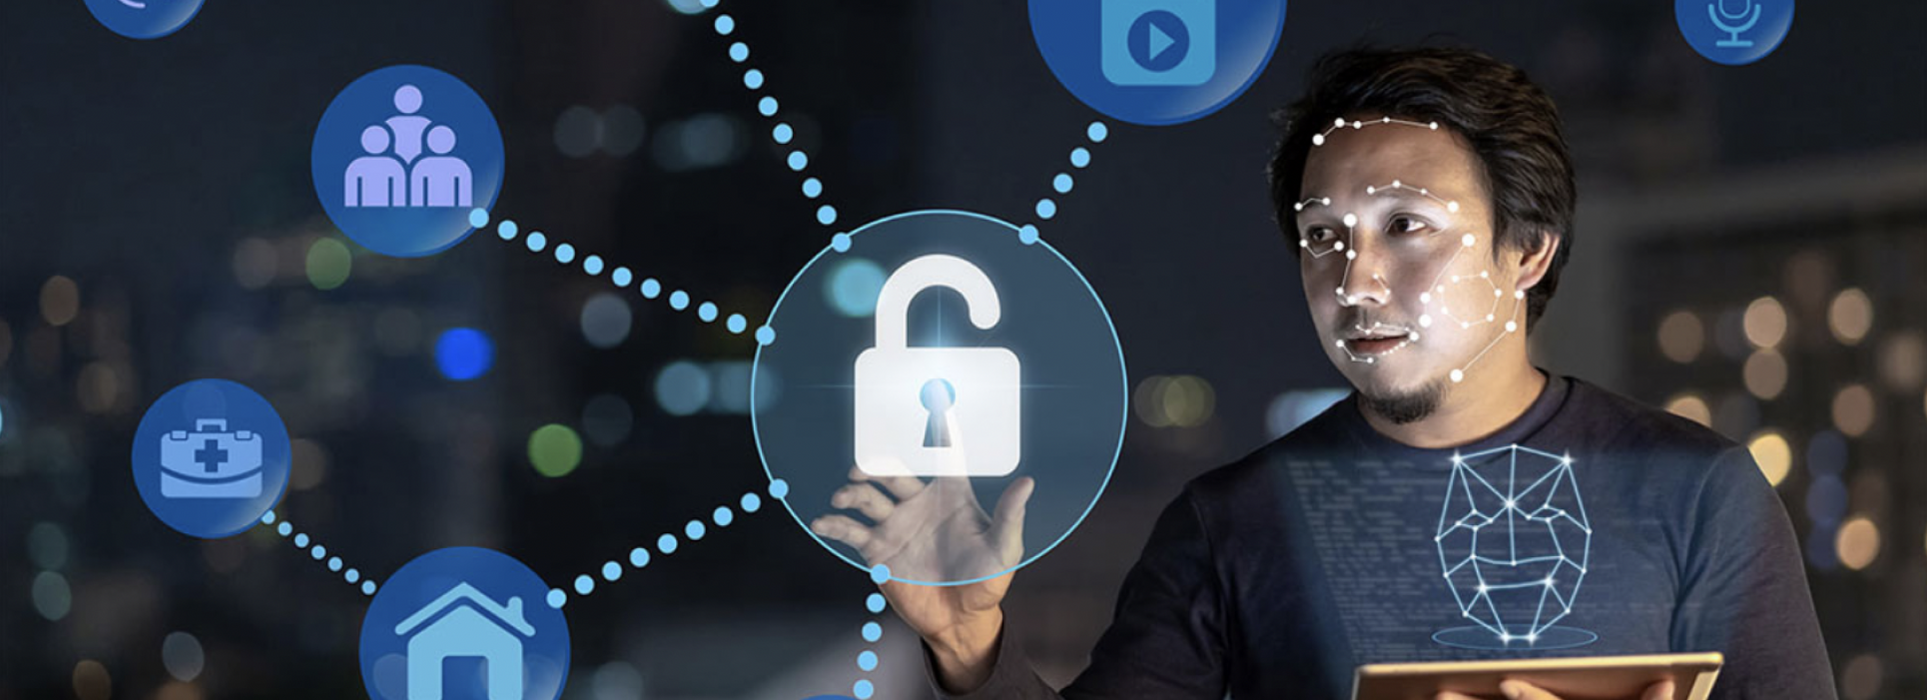 IoT Cyber ​​Security - Come proteggere la rete IoT?